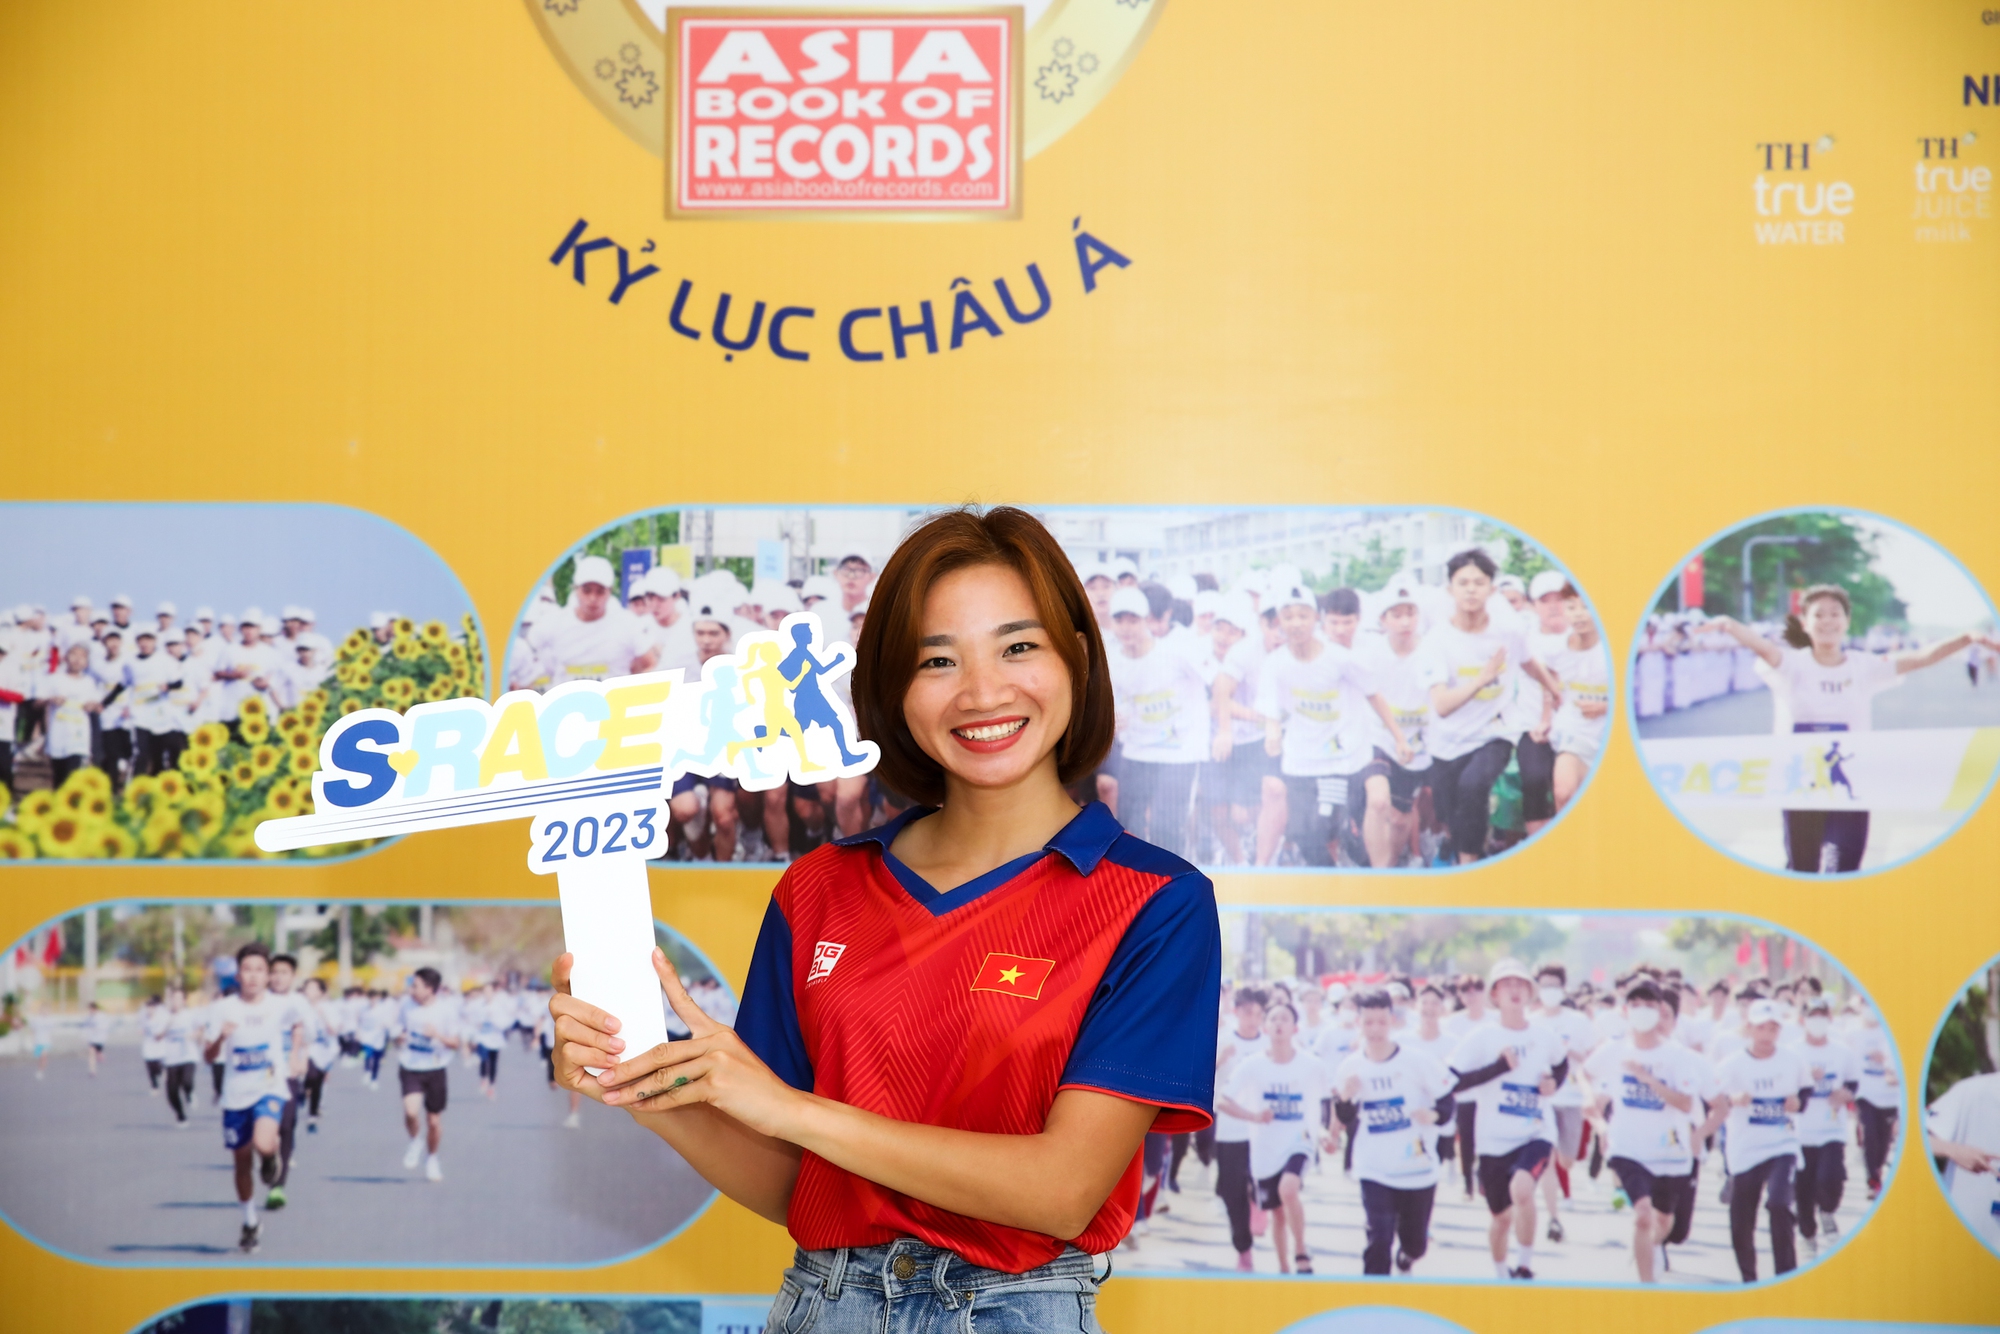 VĐV điền kinh Nguyễn Thị Oanh tham dự giải chạy dành cho học sinh, sinh viên - Ảnh 3.